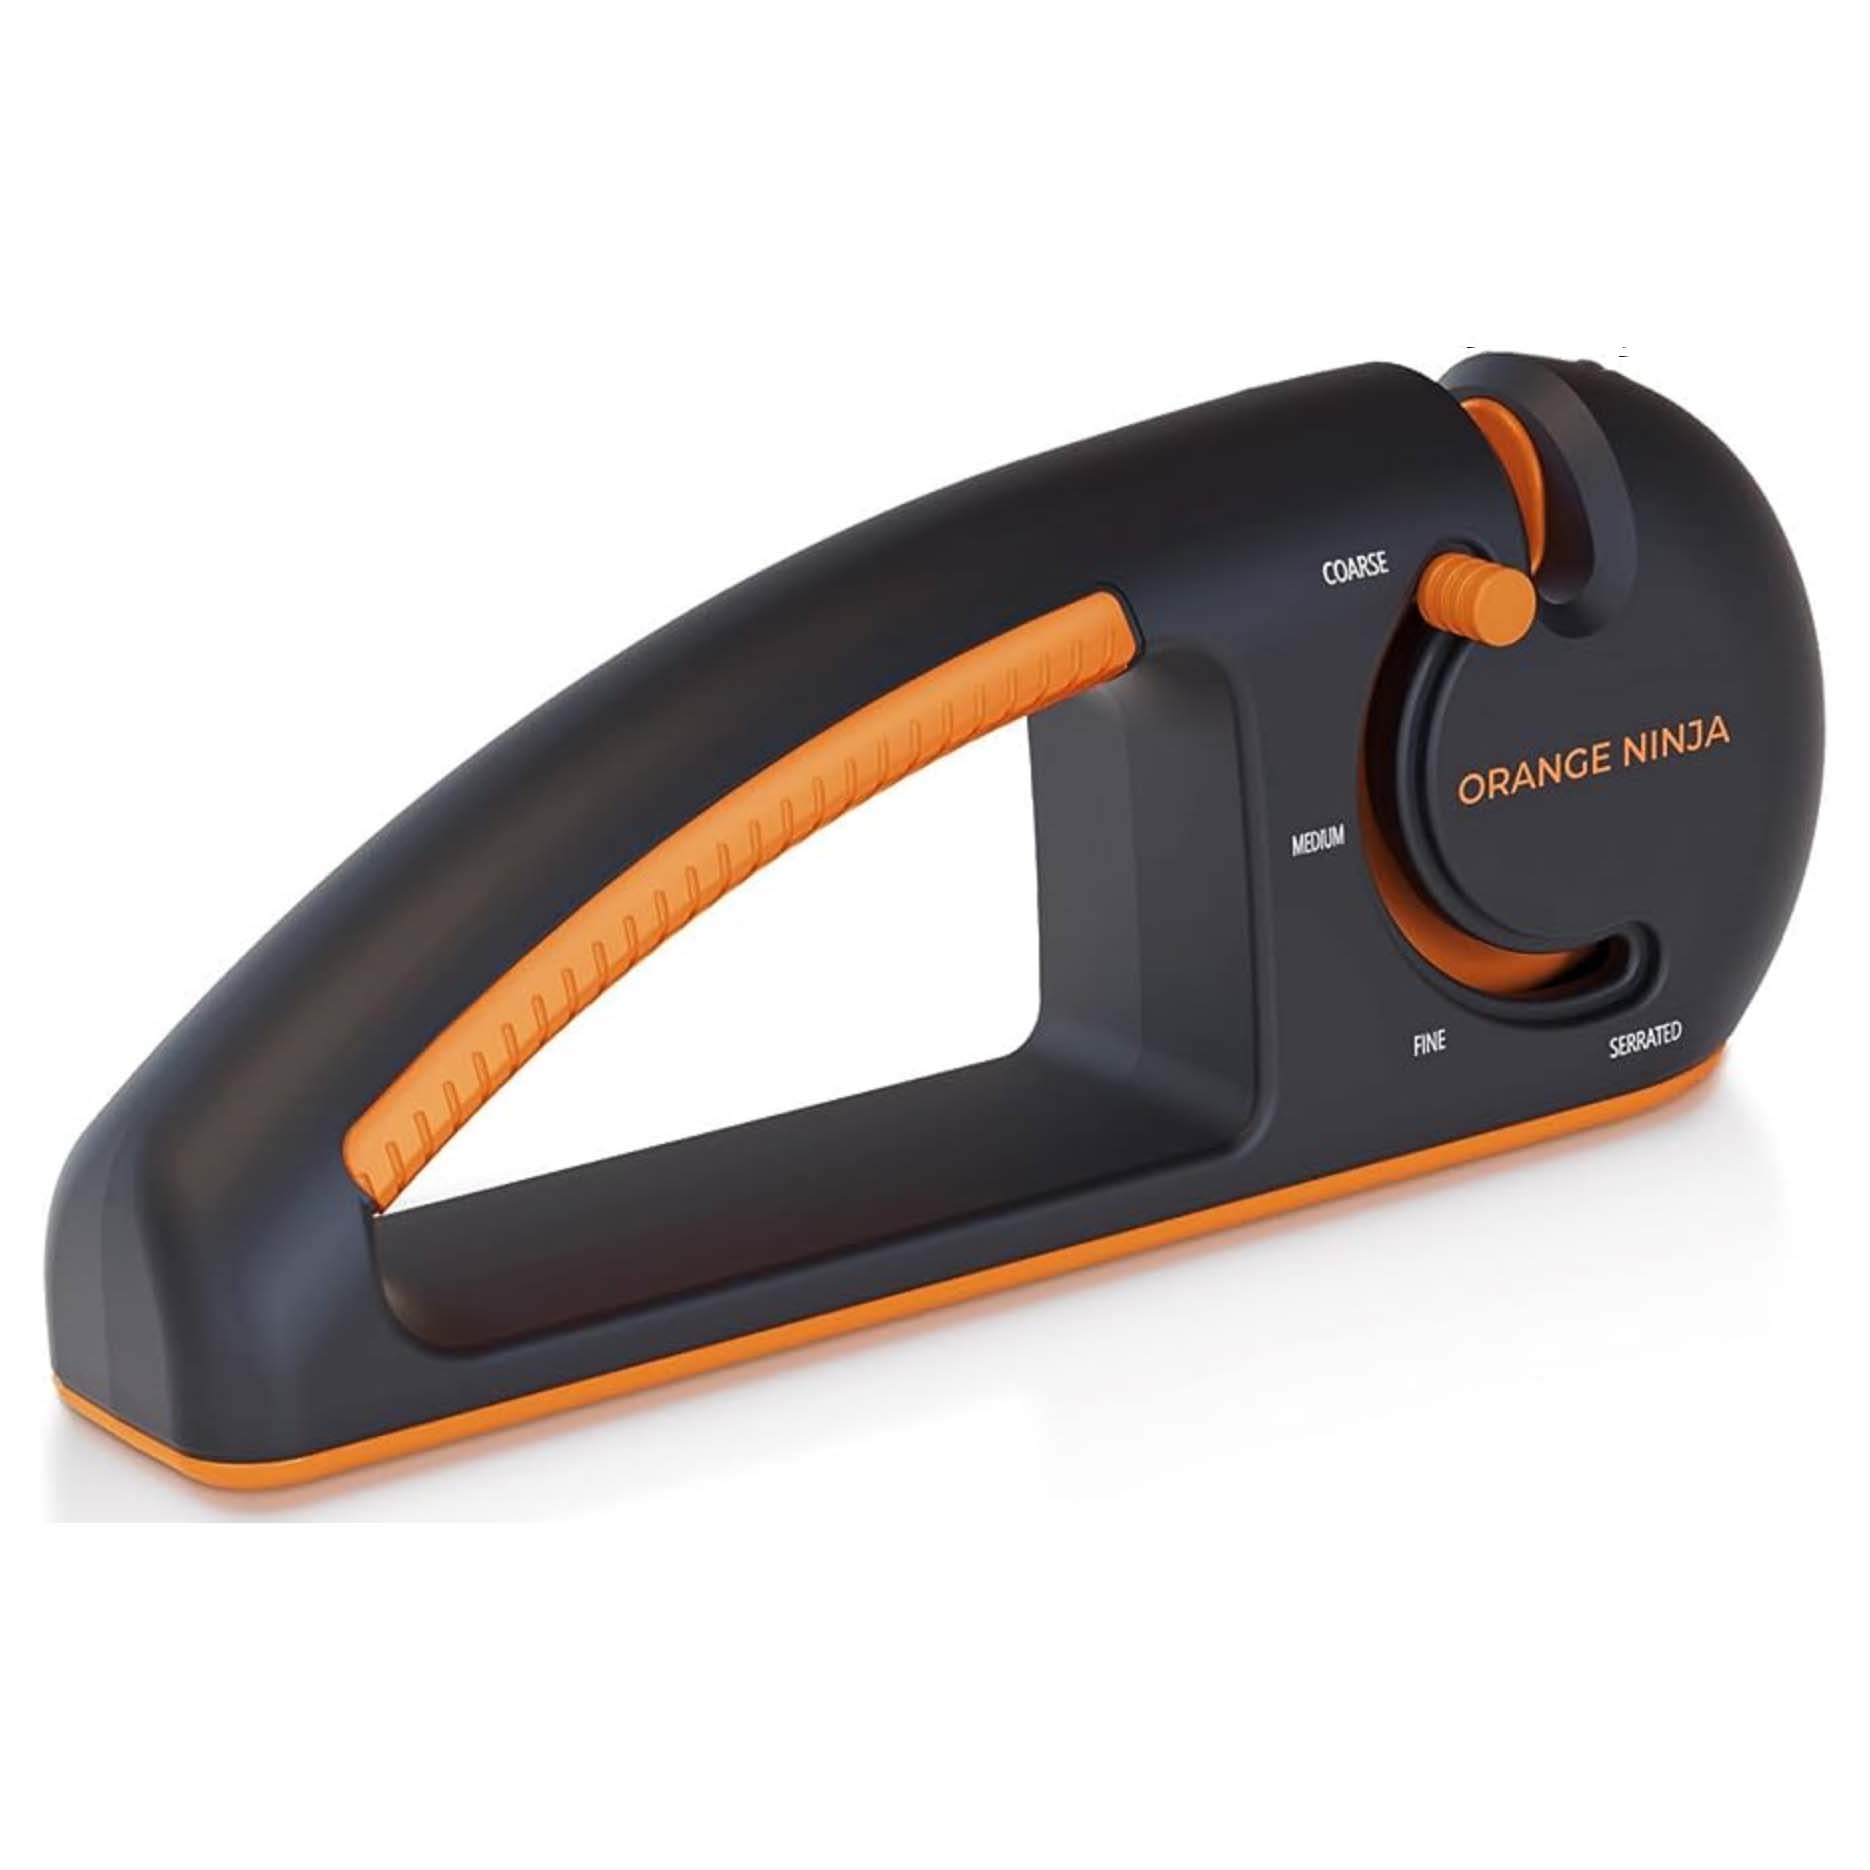 Black and orange knife sharpener